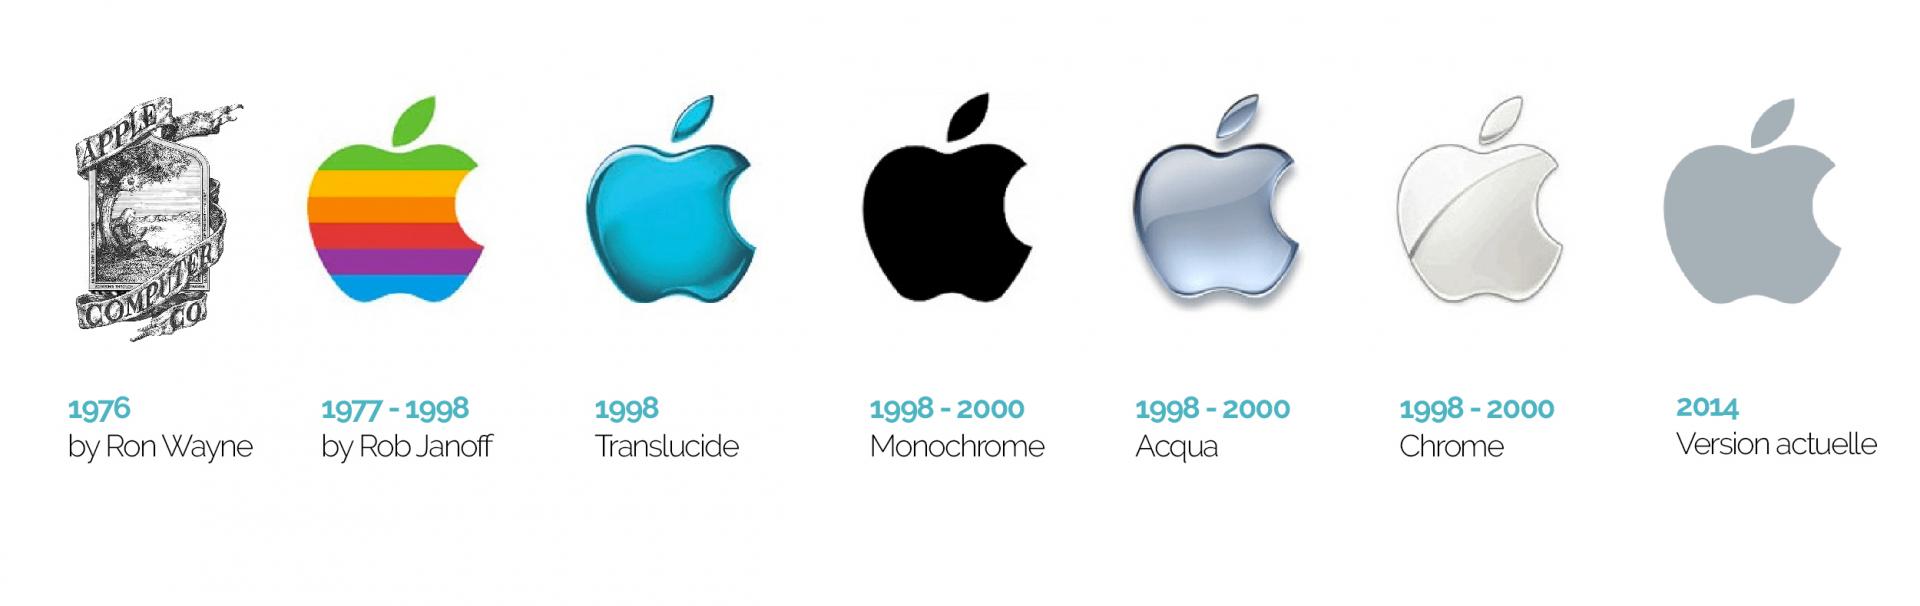 Evolution logo apple bam